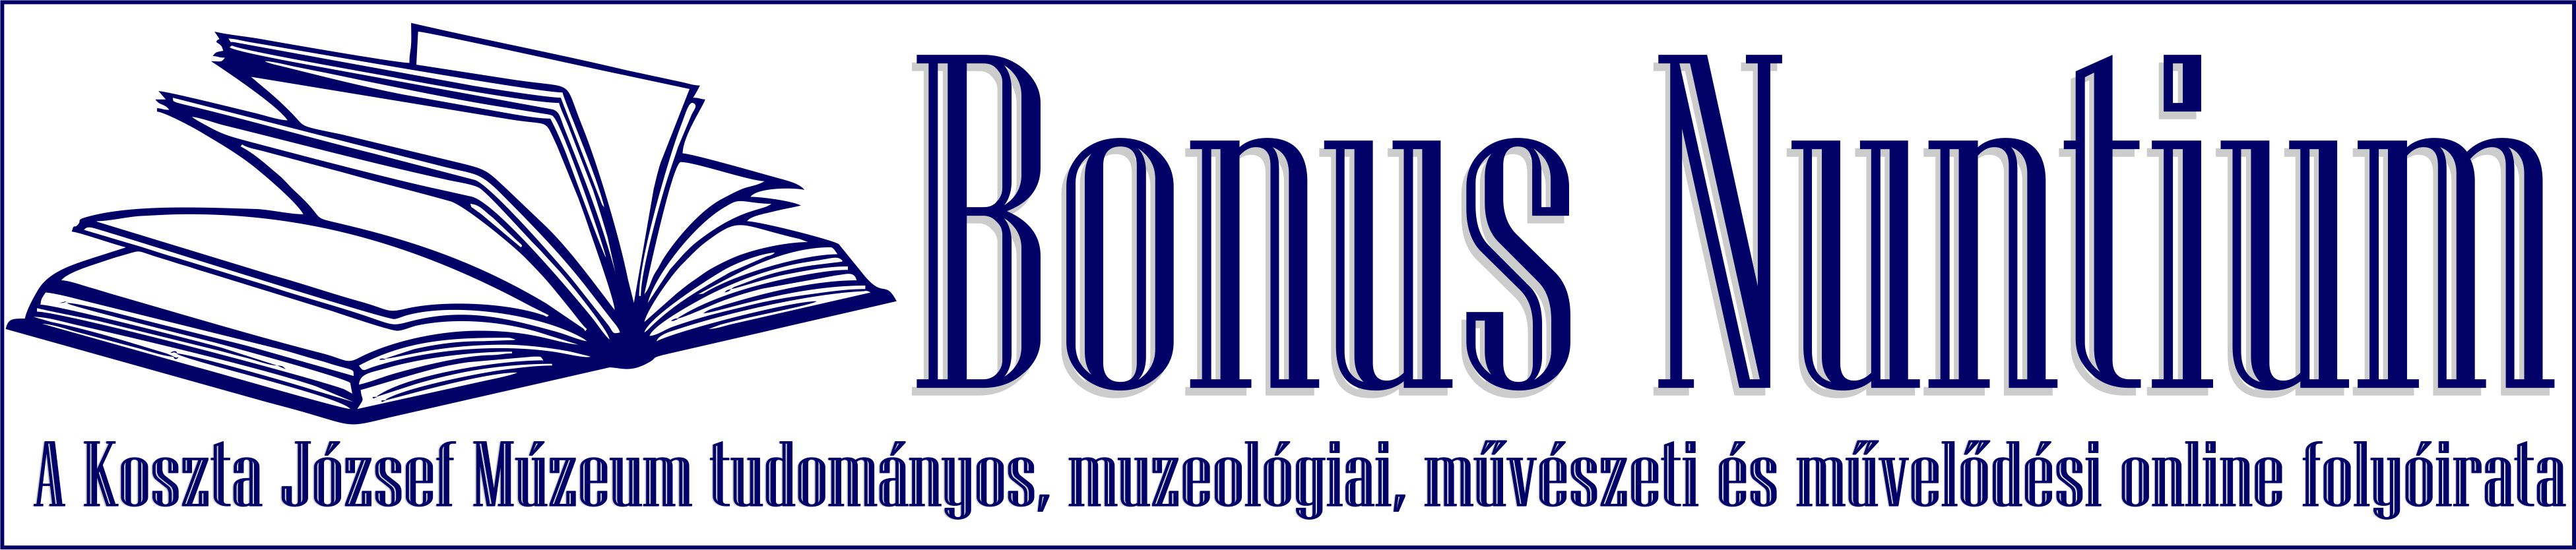 Bonus Nuntium A Koszta József Múzeum online folyóirata logo